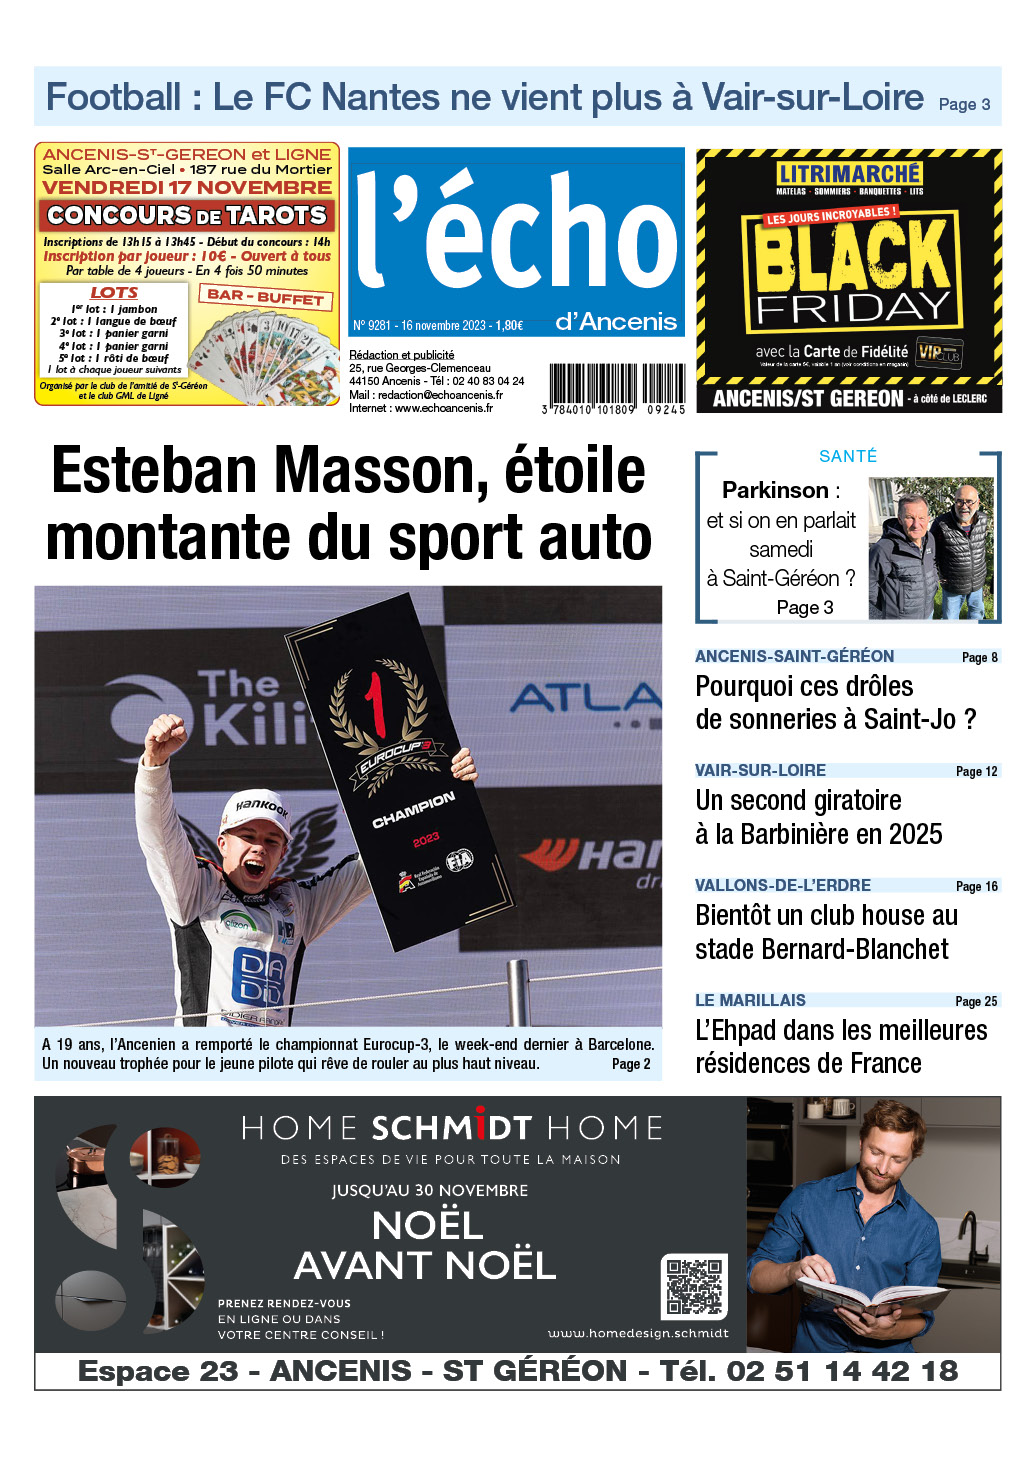 Esteban Masson, étoile montante du sport auto